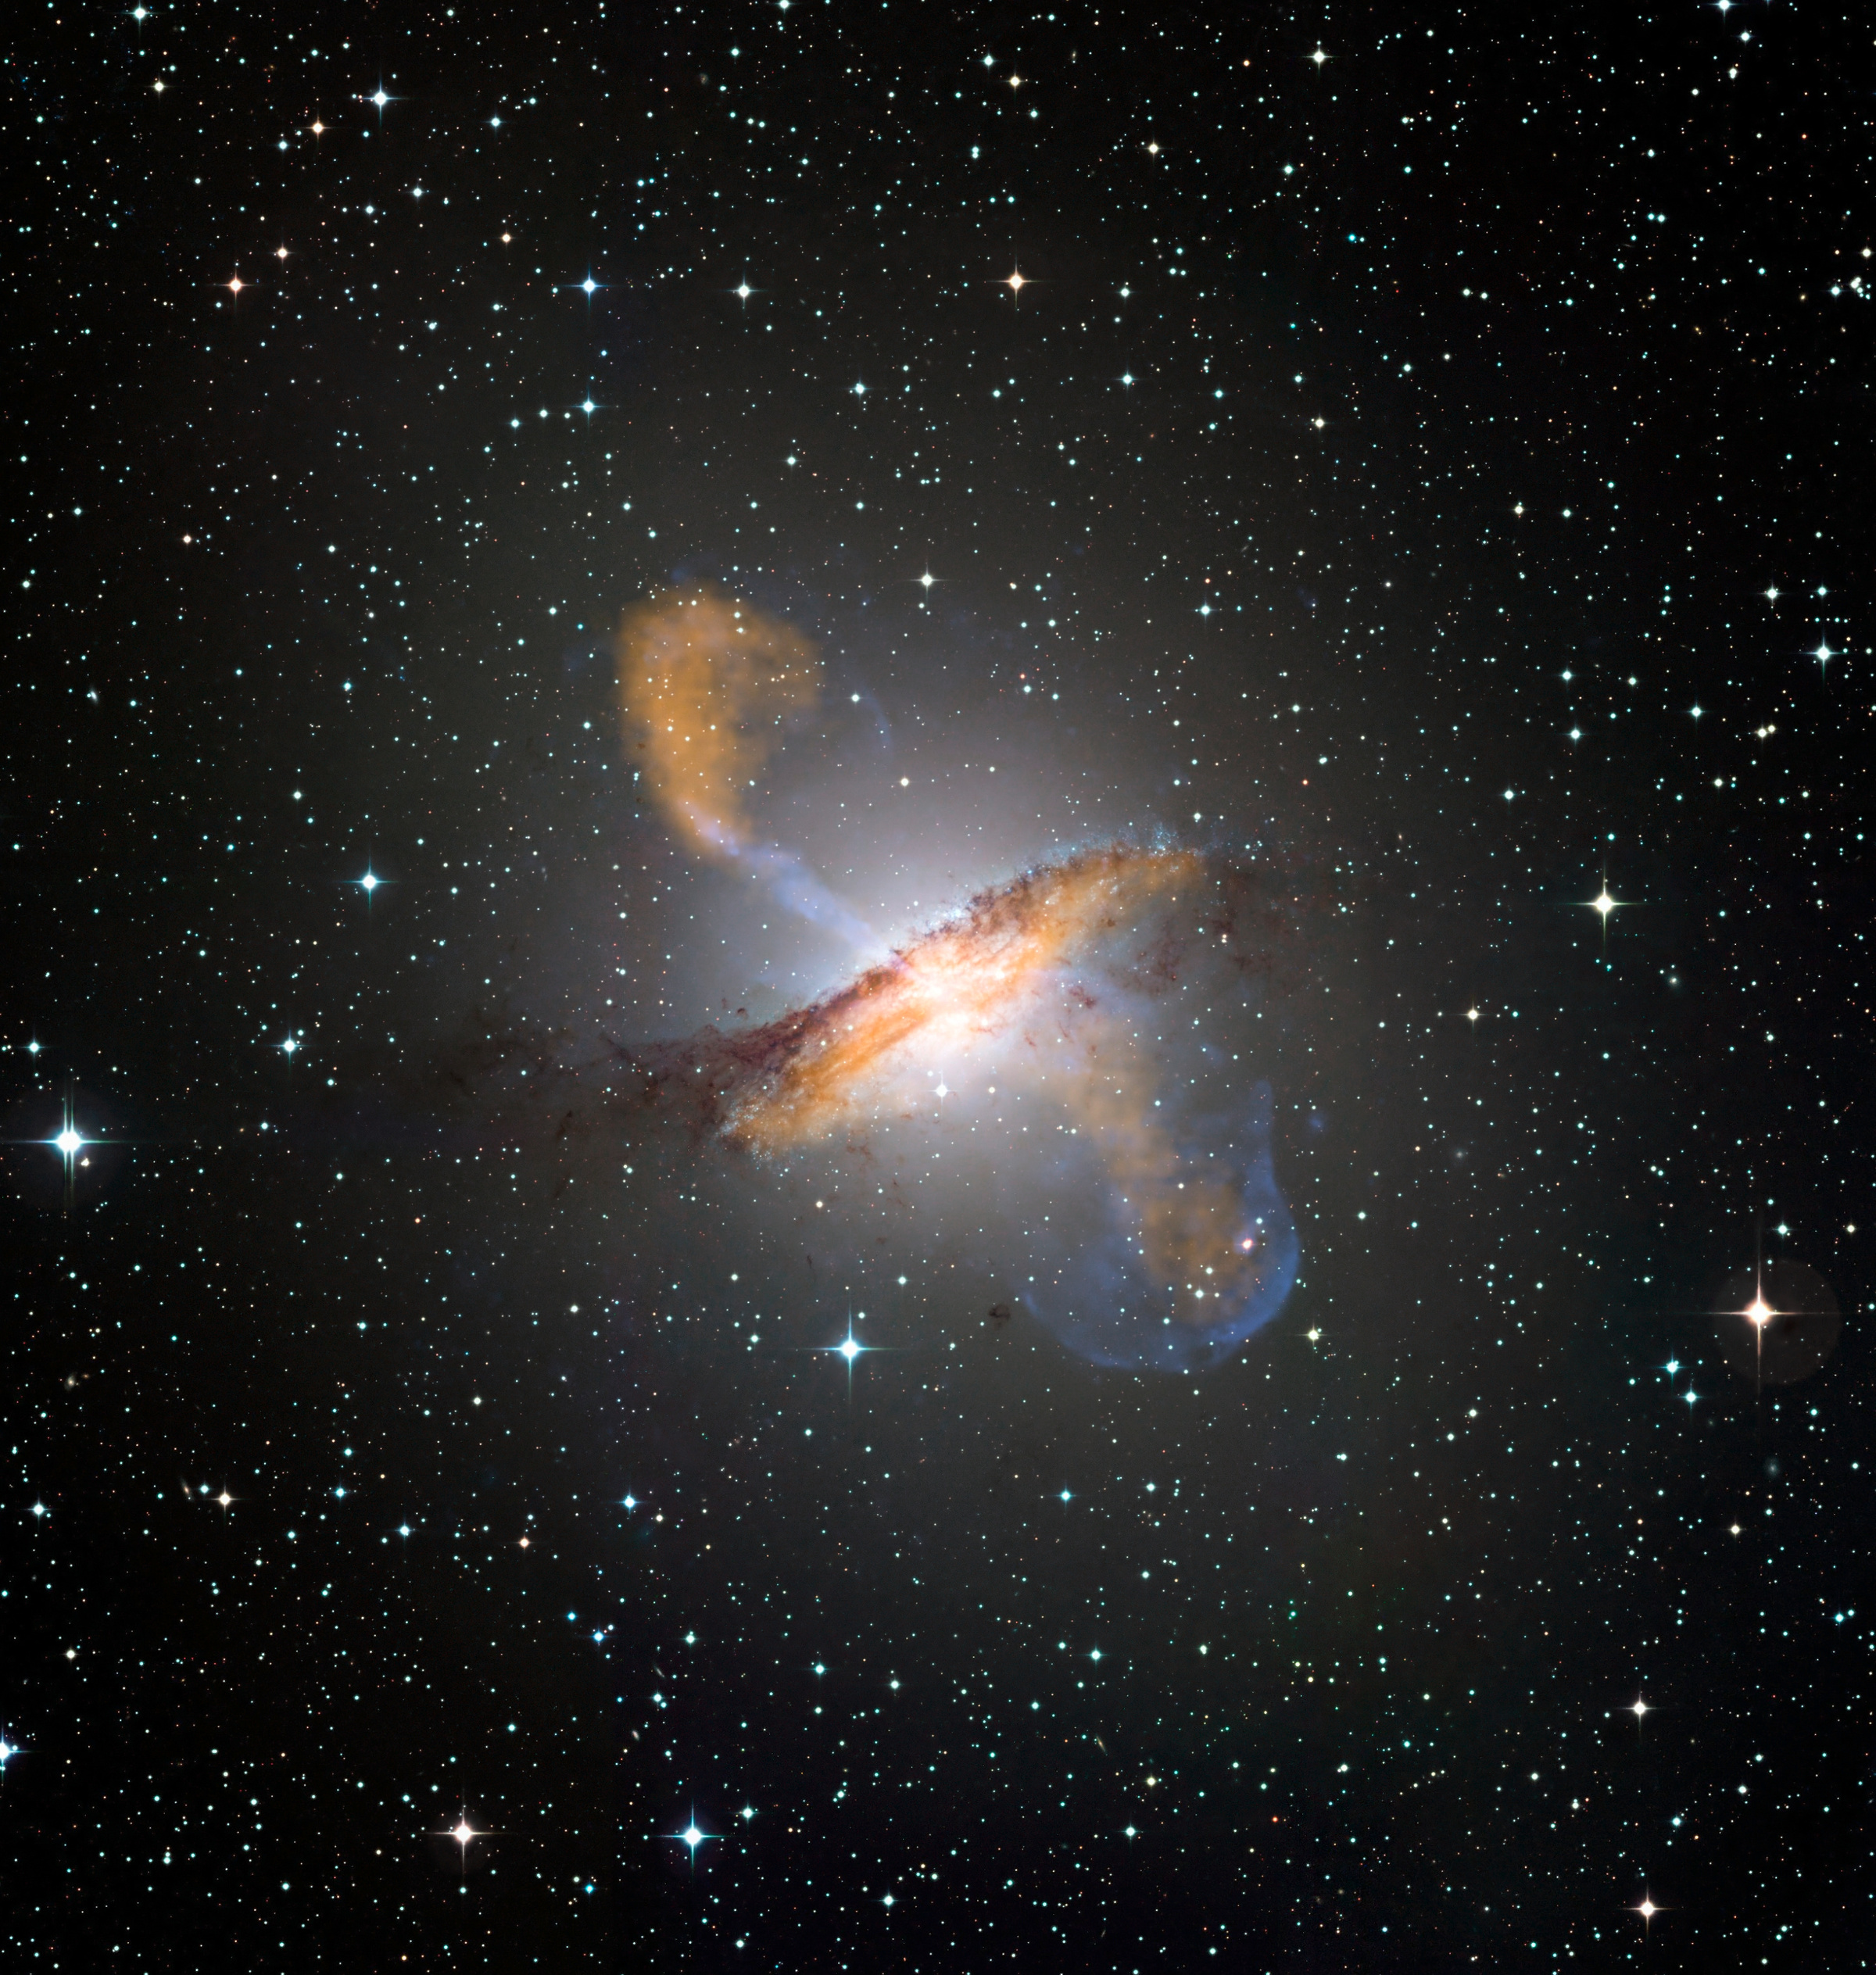 Галактика Центавр А с идущими от неё релятивистскими струями плазмы. Фото © Европейская южная обсерватория